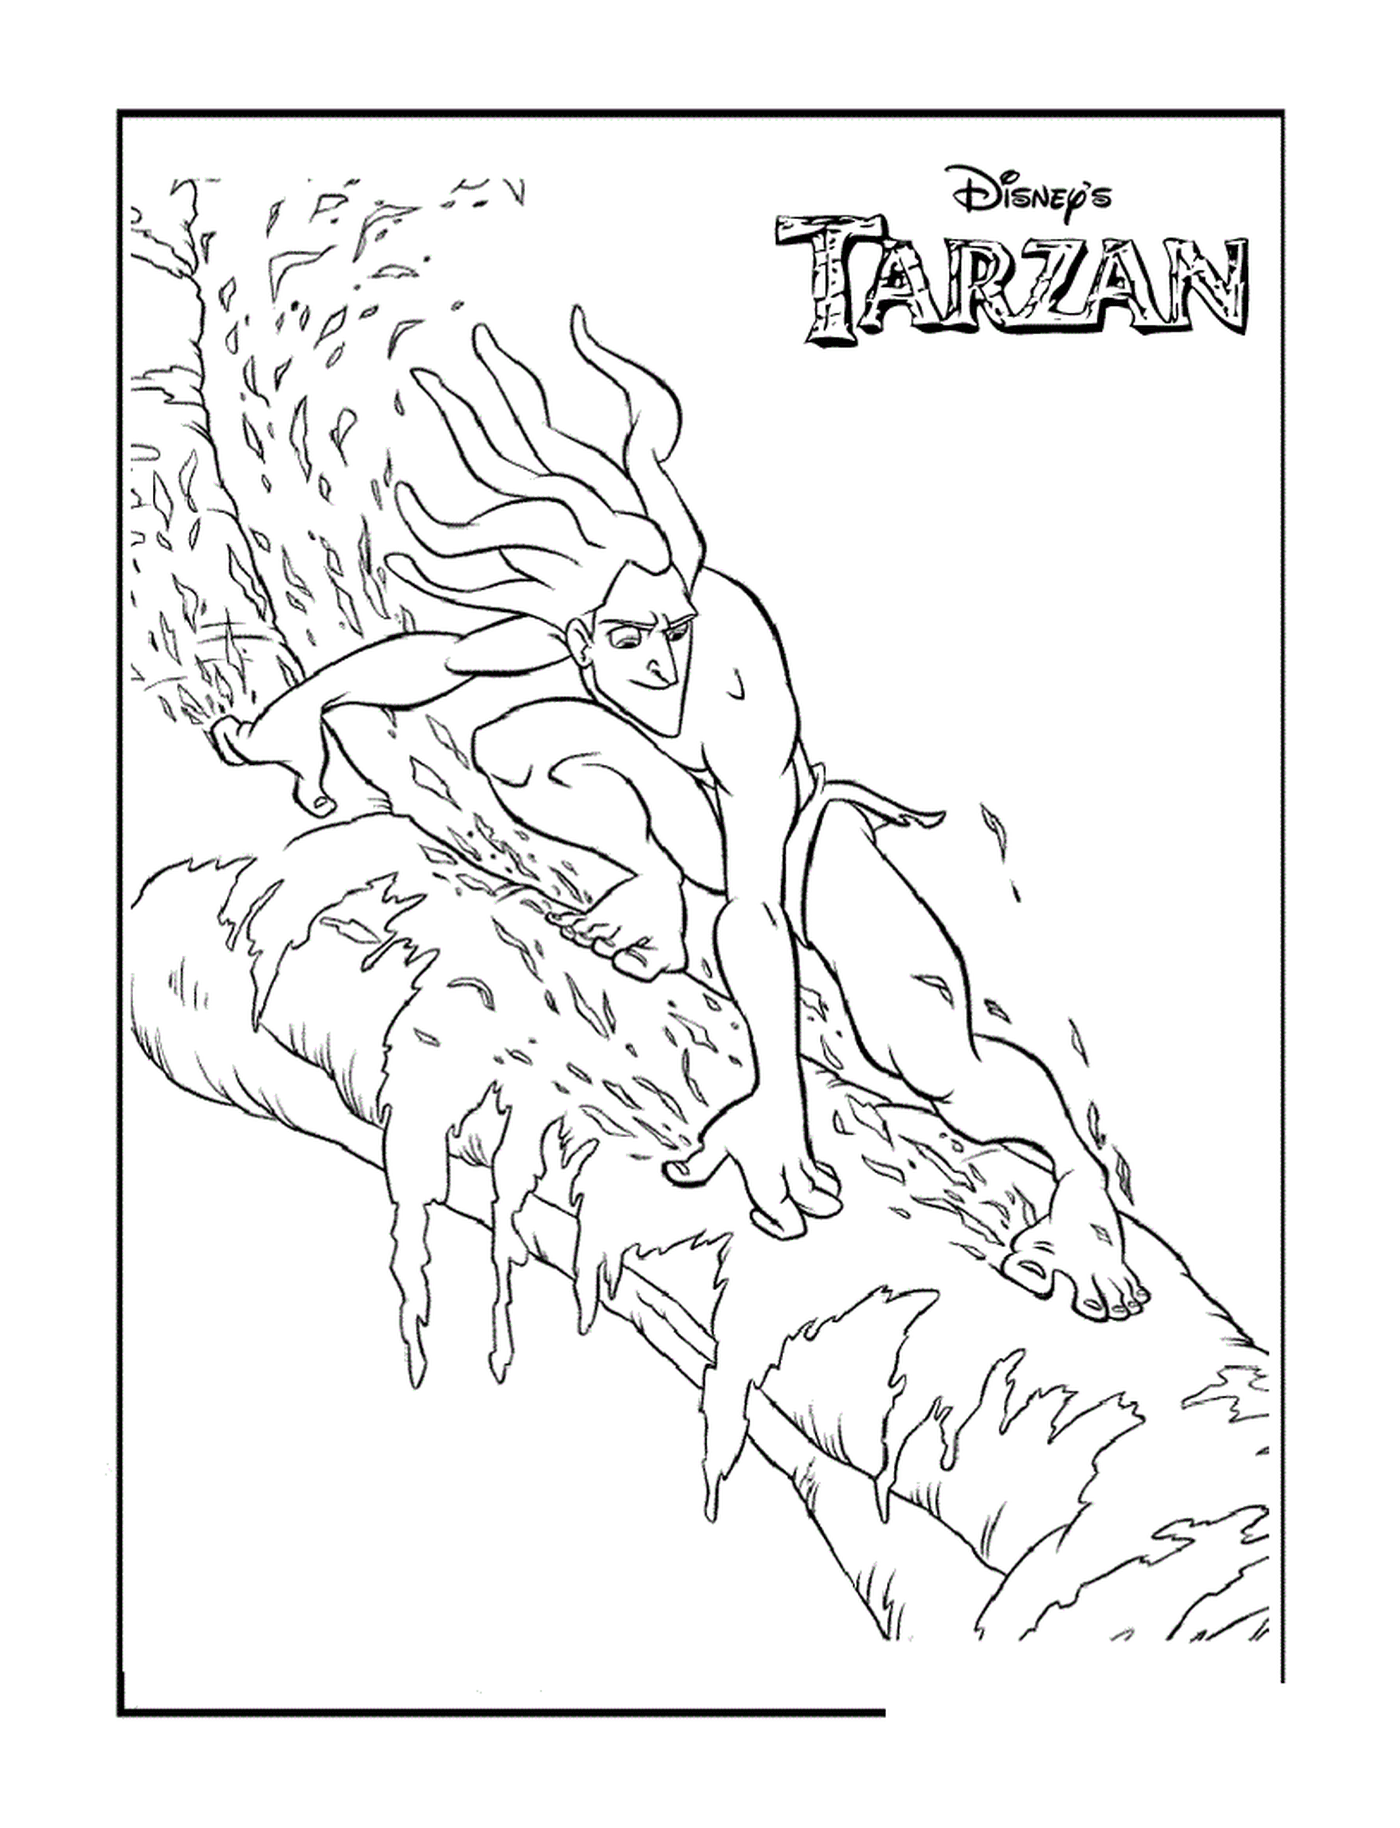  Tarzan escapa das lianas 